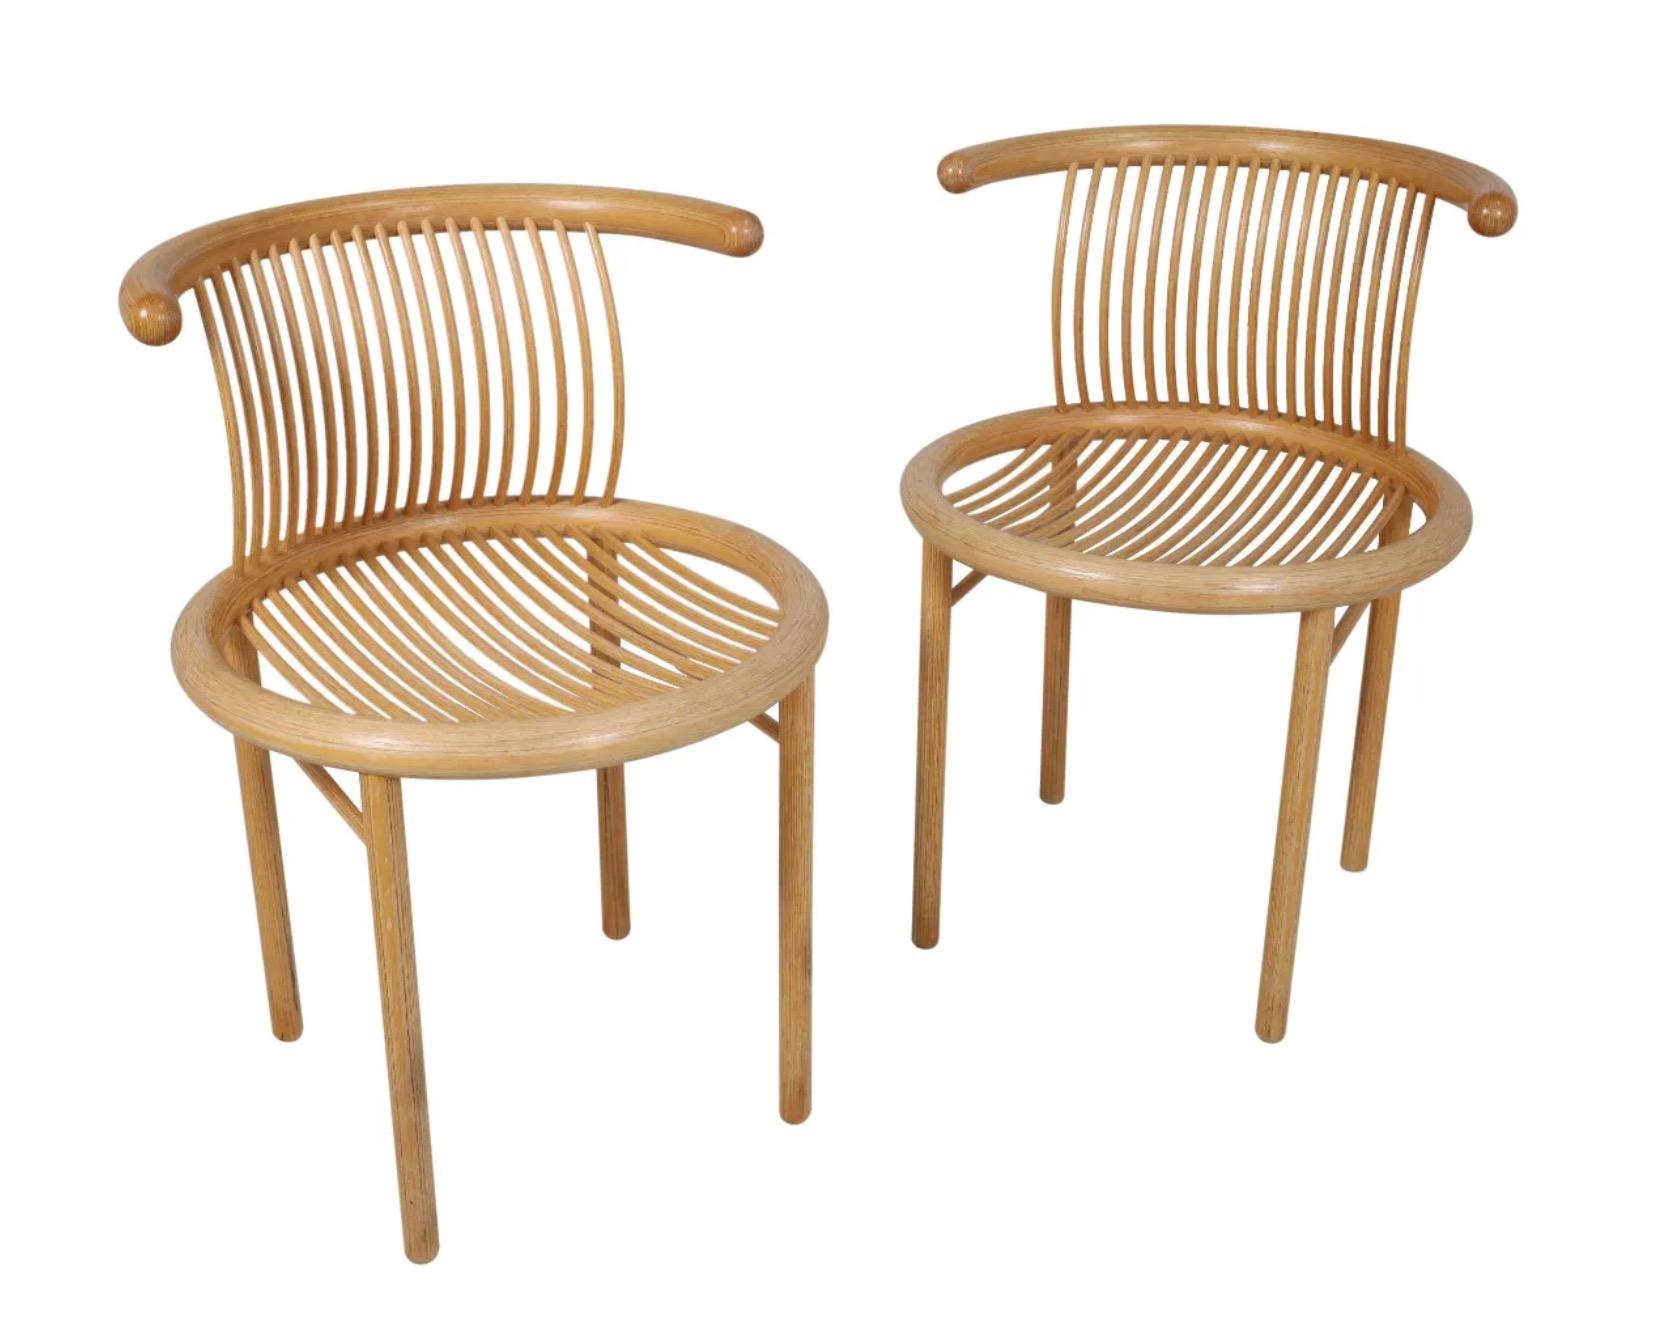 Satz von 2 Esszimmerstühlen von Helmut Lübke, hergestellt in Deutschland um 1960. Die Stühle befinden sich in einem ausgezeichneten Originalzustand und weisen nur leichte kosmetische Abnutzungserscheinungen auf, die normal und altersentsprechend